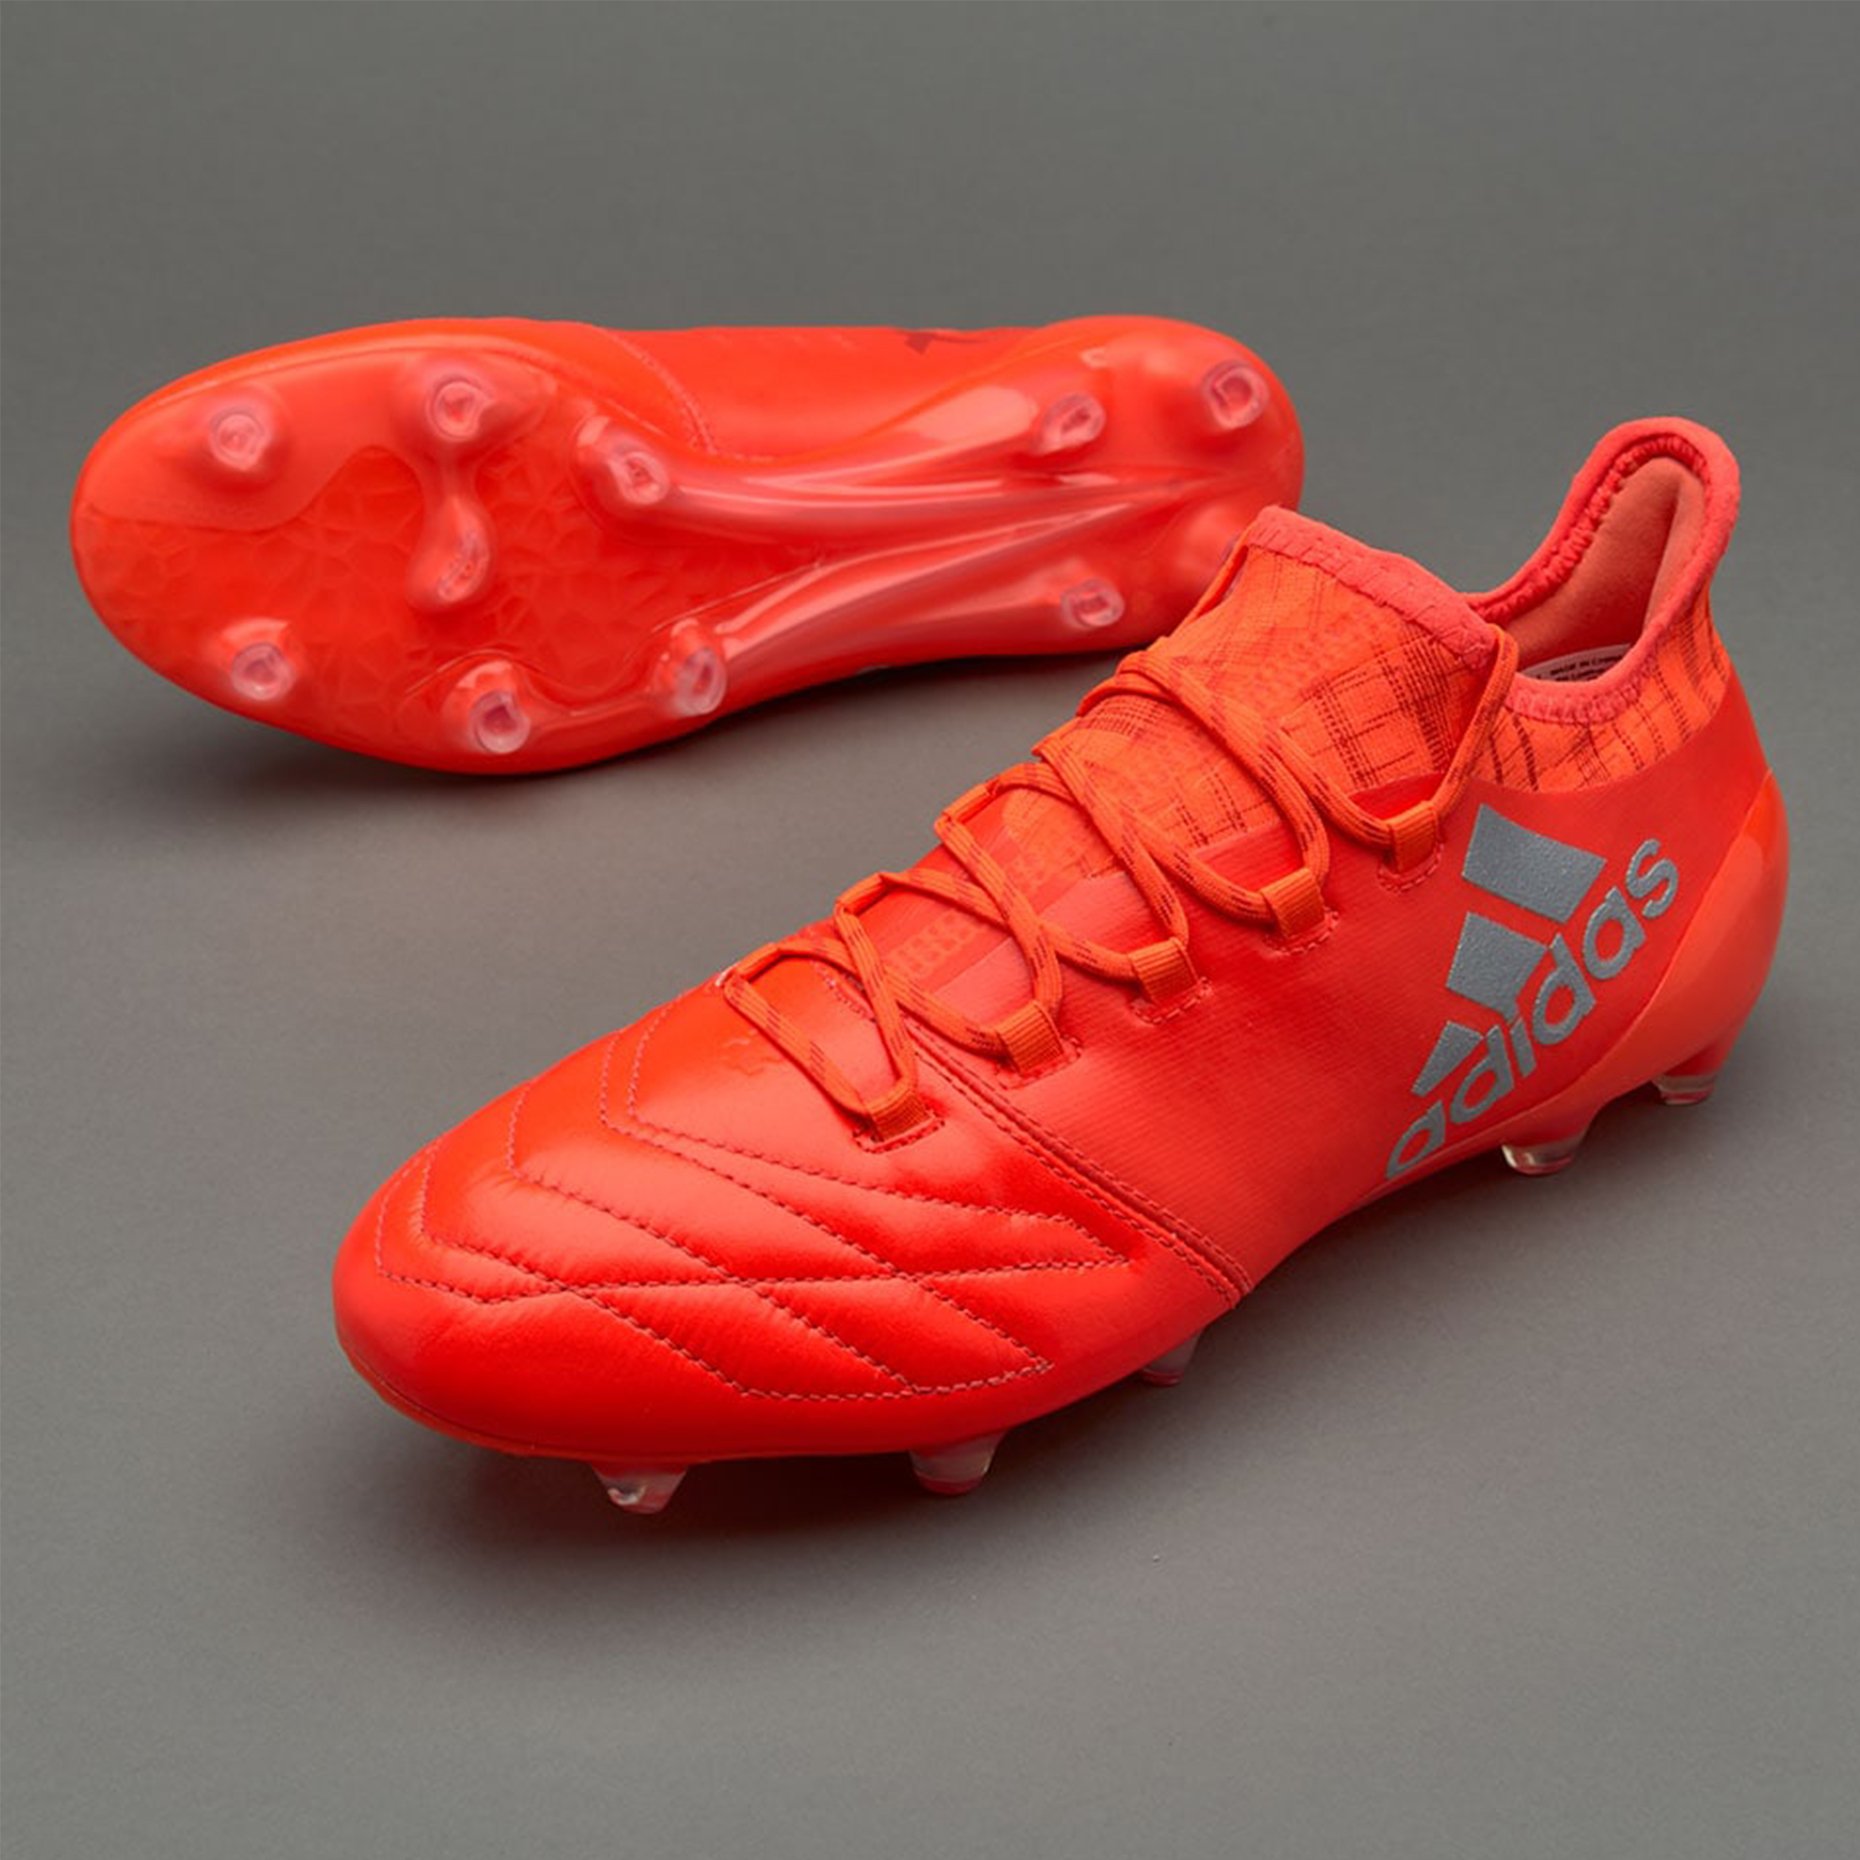 Футбольные бутсы adidas X 16.1 FG Leather